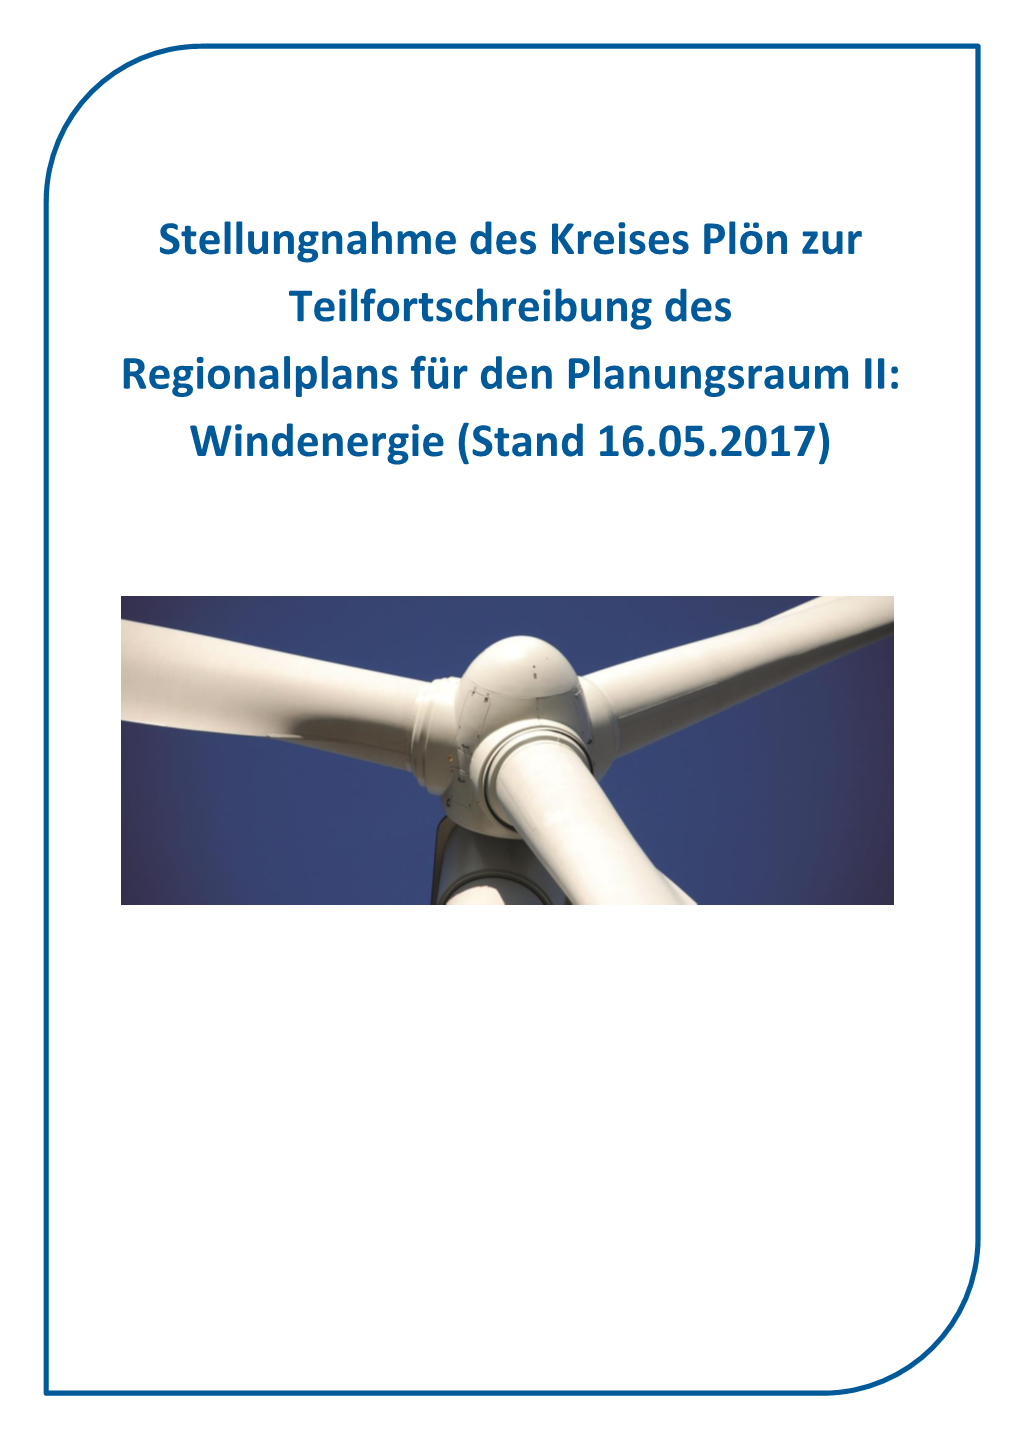 Stellungnahme Des Kreises Plön Zur Teilfortschreibung Des Regionalplans Für Den Planungsraum II: Windenergie (Stand 16.05.2017) Anlage 1